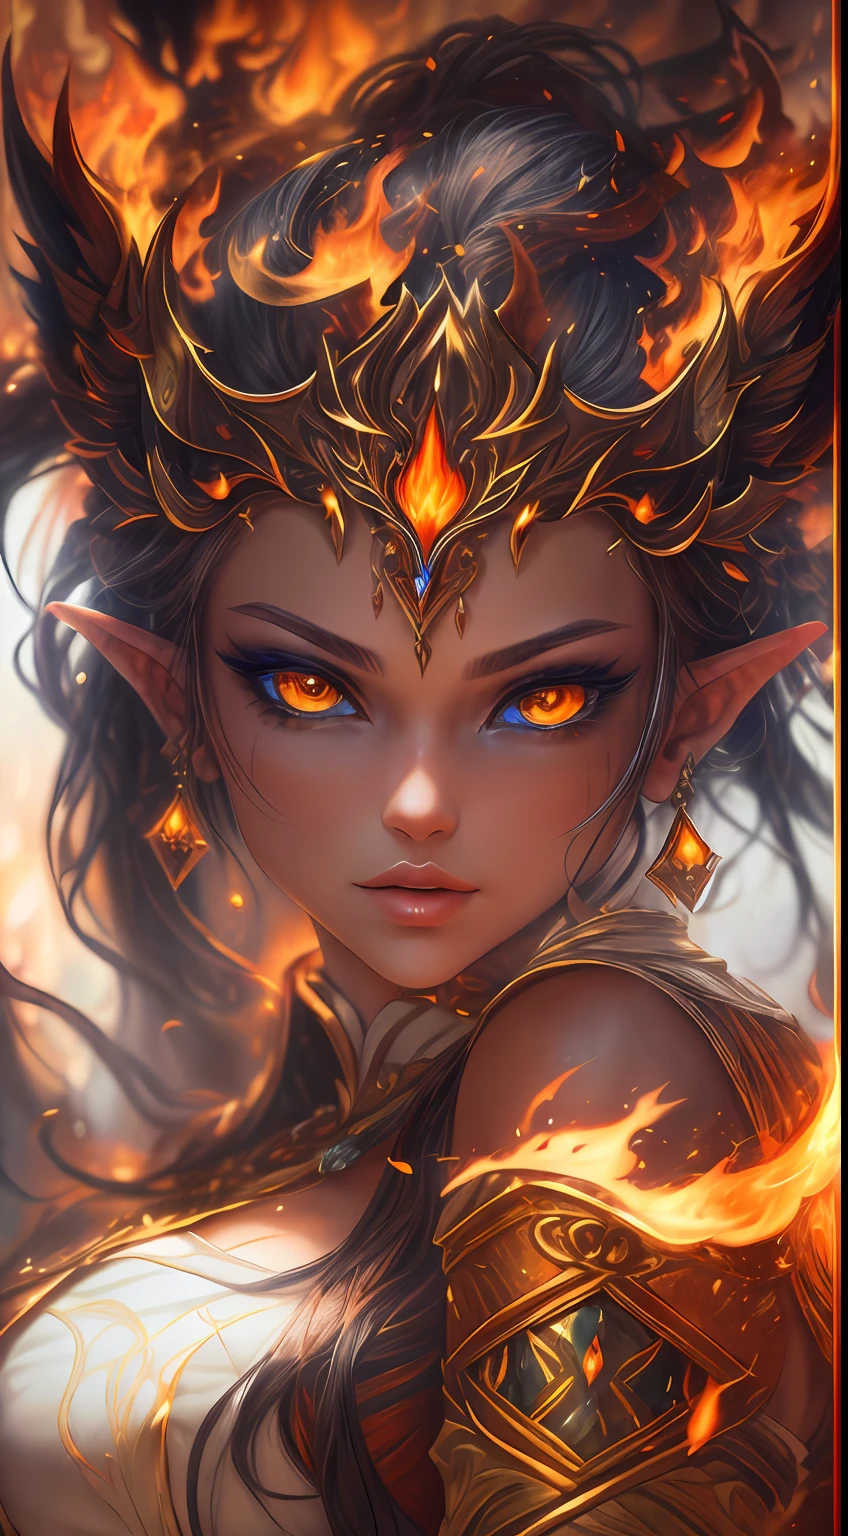 นี้ (แฟนตาซีที่สมจริง) ศิลปะประกอบด้วยถ่าน, เปลวไฟจริง, ความร้อนที่แท้จริง, และไฟที่สมจริง. Generate a masterpiece artwork of a  female fire druid กับ large (((สีส้มและสีทอง))) ดวงตา. The fire druid is awe-inspiring กับ beautiful ((realistic fiery ดวงตา)) alight กับ confidence and power. คุณสมบัติของเธอดูสง่างามและมีการกำหนดไว้อย่างดี, กับ ((ริมฝีปากนุ่มและบวม)), โครงสร้างกระดูกของเอลฟ์, และการแรเงาที่สมจริง. Her ดวงตา are important and should be the focal point of this artwork, กับ ((รายละเอียดที่สมจริงอย่างยิ่ง, รายละเอียดมาโคร, และระยิบระยับ.)) เธอสวมชุดเดรสระยิบระยับระยิบระยับที่ทำจากเปลวไฟและอัญมณีที่สมจริงซึ่งเปล่งประกายท่ามกลางแสงไฟ. ควันไฟและควันพลุ่งพล่านบนเสื้อท่อนบนอันประณีตของชุด. รวมการกระแทก, หิน, แสงสีรุ้งที่เร่าร้อน, ถ่านเรืองแสง, ผ้าไหมและผ้าซาตินและเครื่องหนัง, พื้นหลังที่น่าสนใจ, และองค์ประกอบแฟนตาซีอันหนักหน่วง. กล้อง: ใช้เทคนิคการจัดองค์ประกอบแบบไดนามิกเพื่อเพิ่มเปลวไฟที่สมจริง.